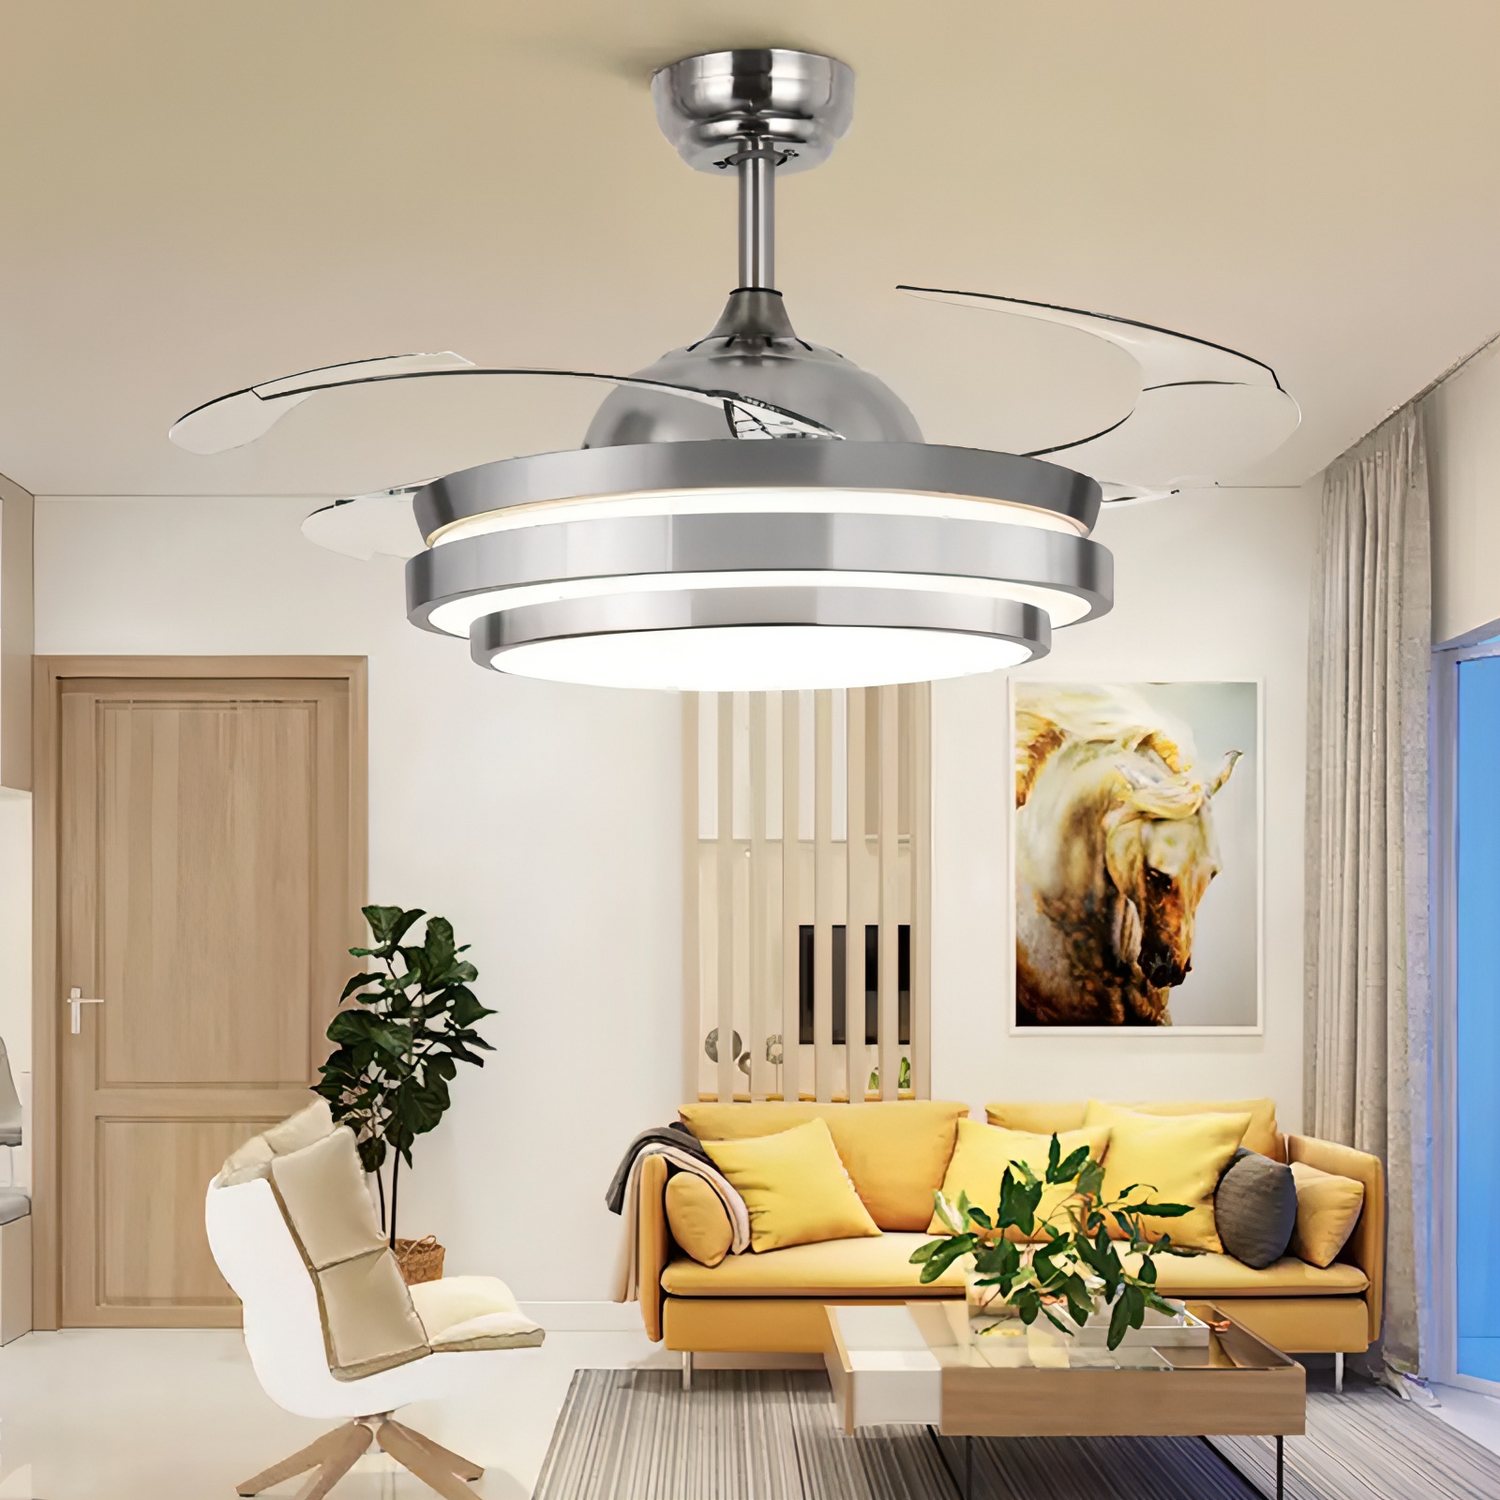 Luxurious Ceiling Fan